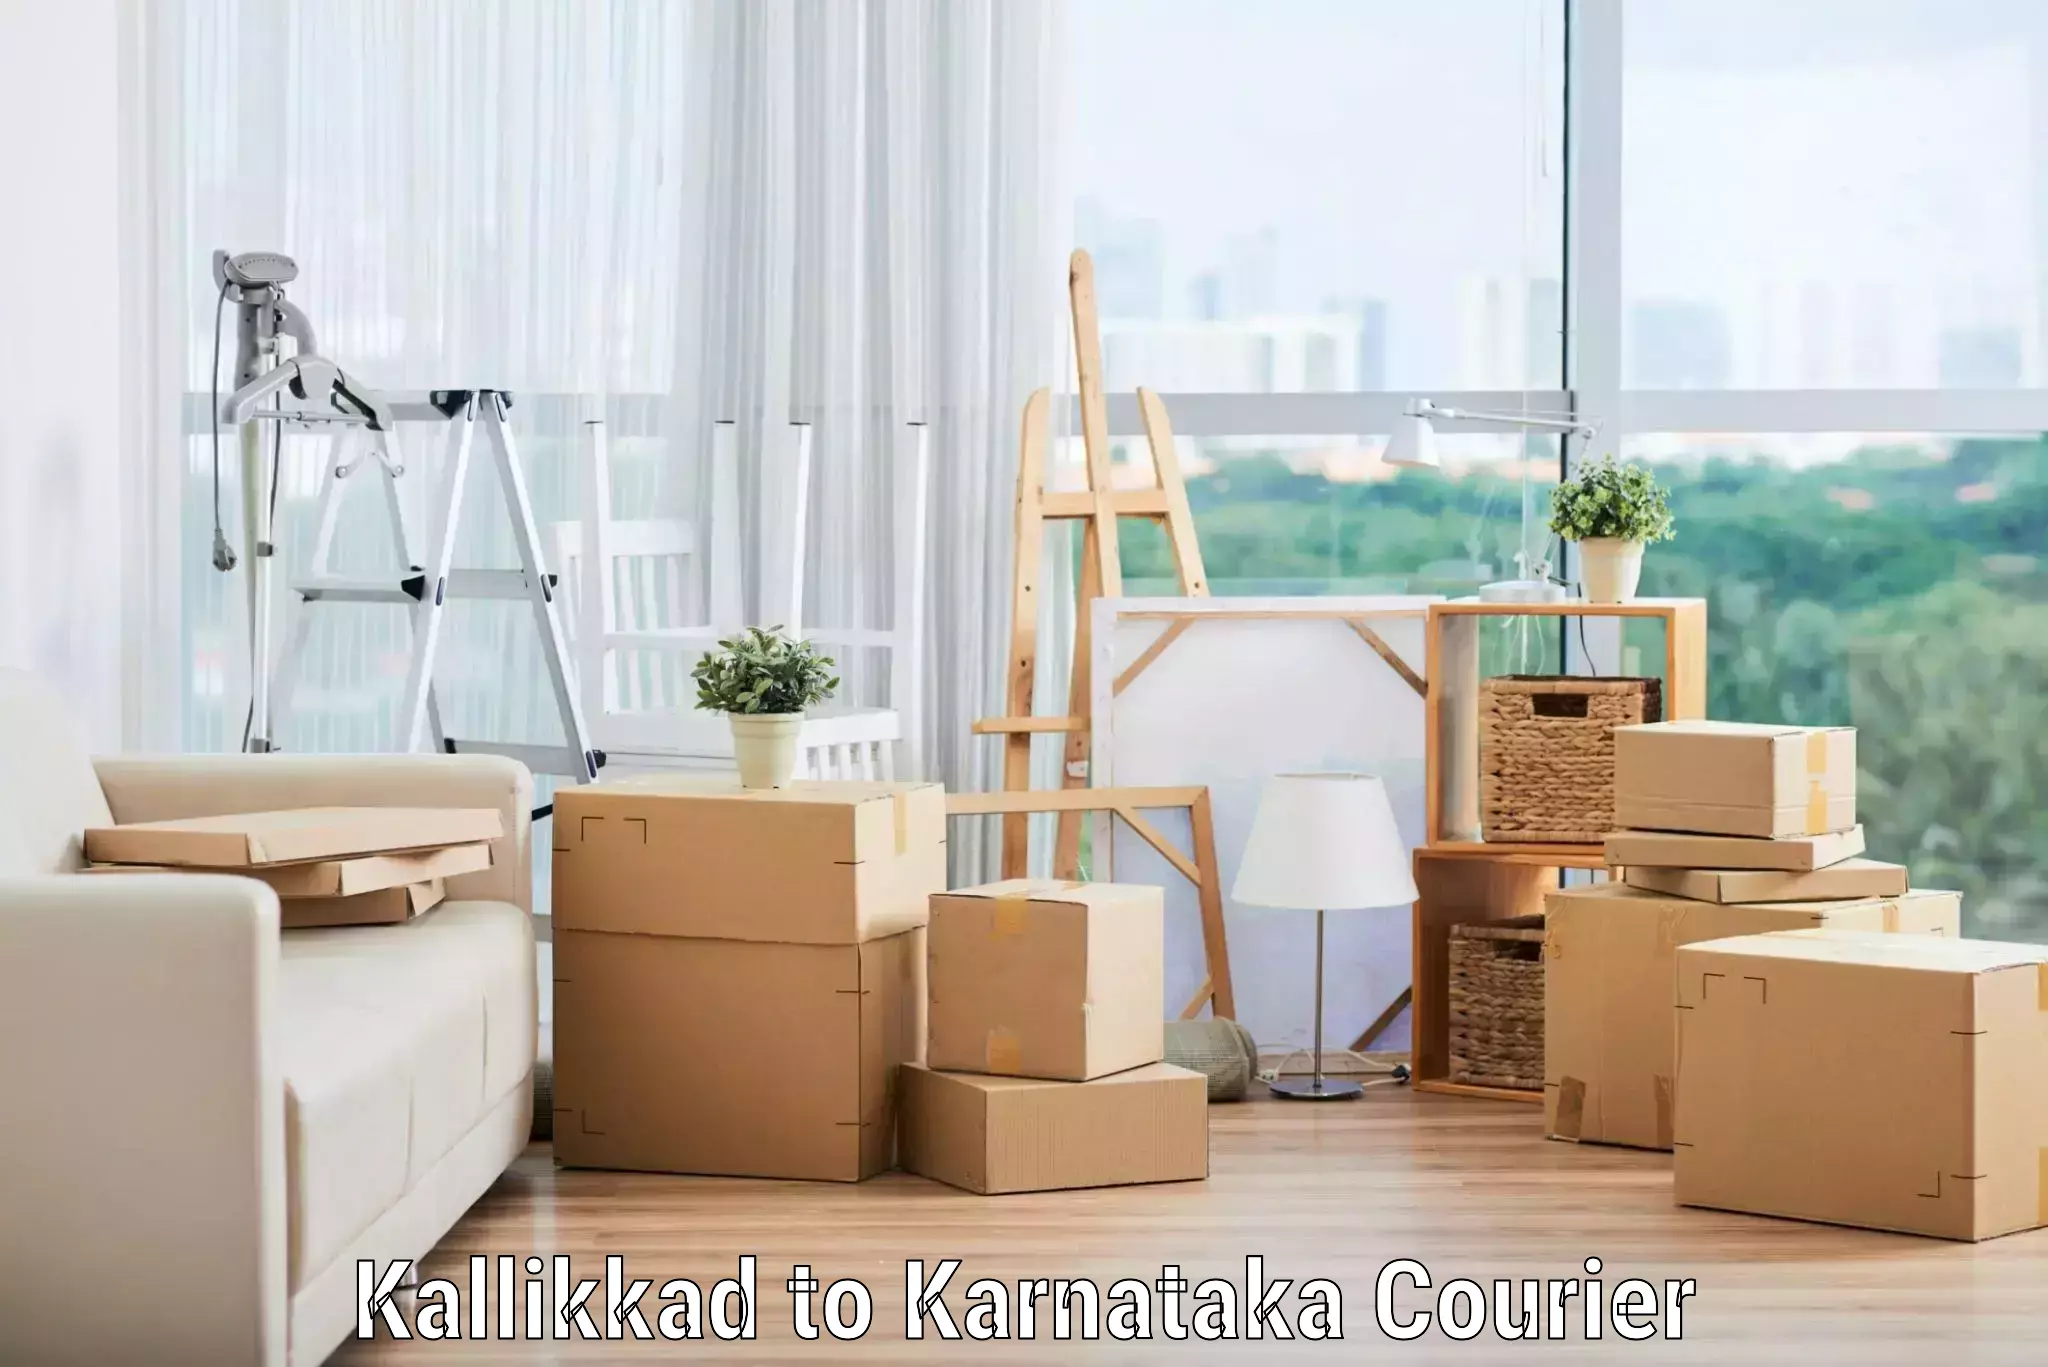 Full-service relocation Kallikkad to Yellare